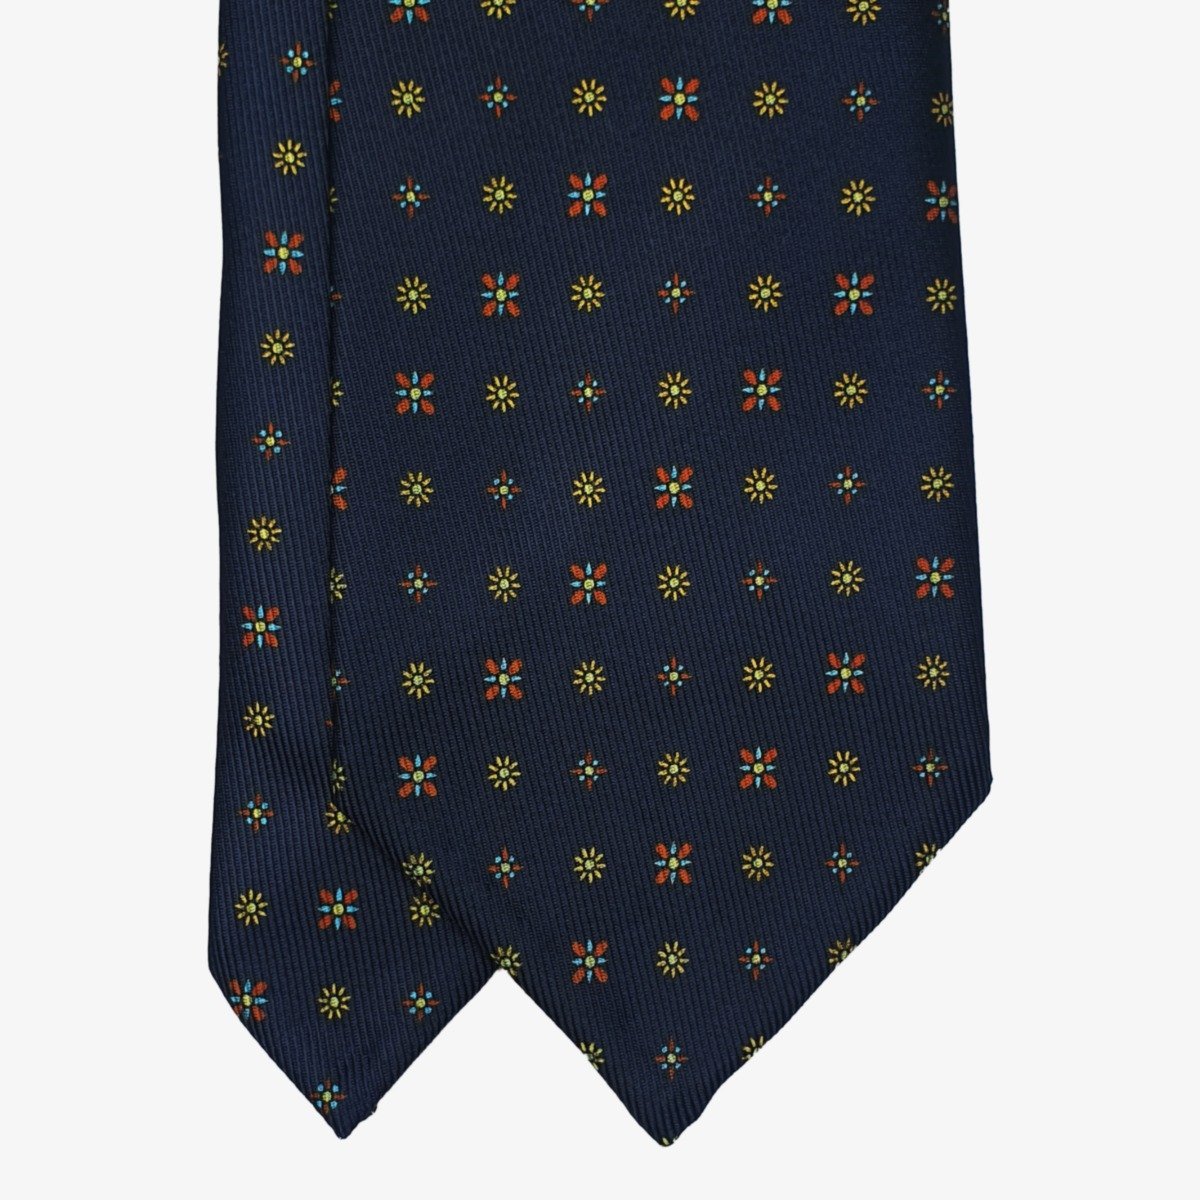 Shibumi Firenze 50oz navy blue silk tie with yellow flowers